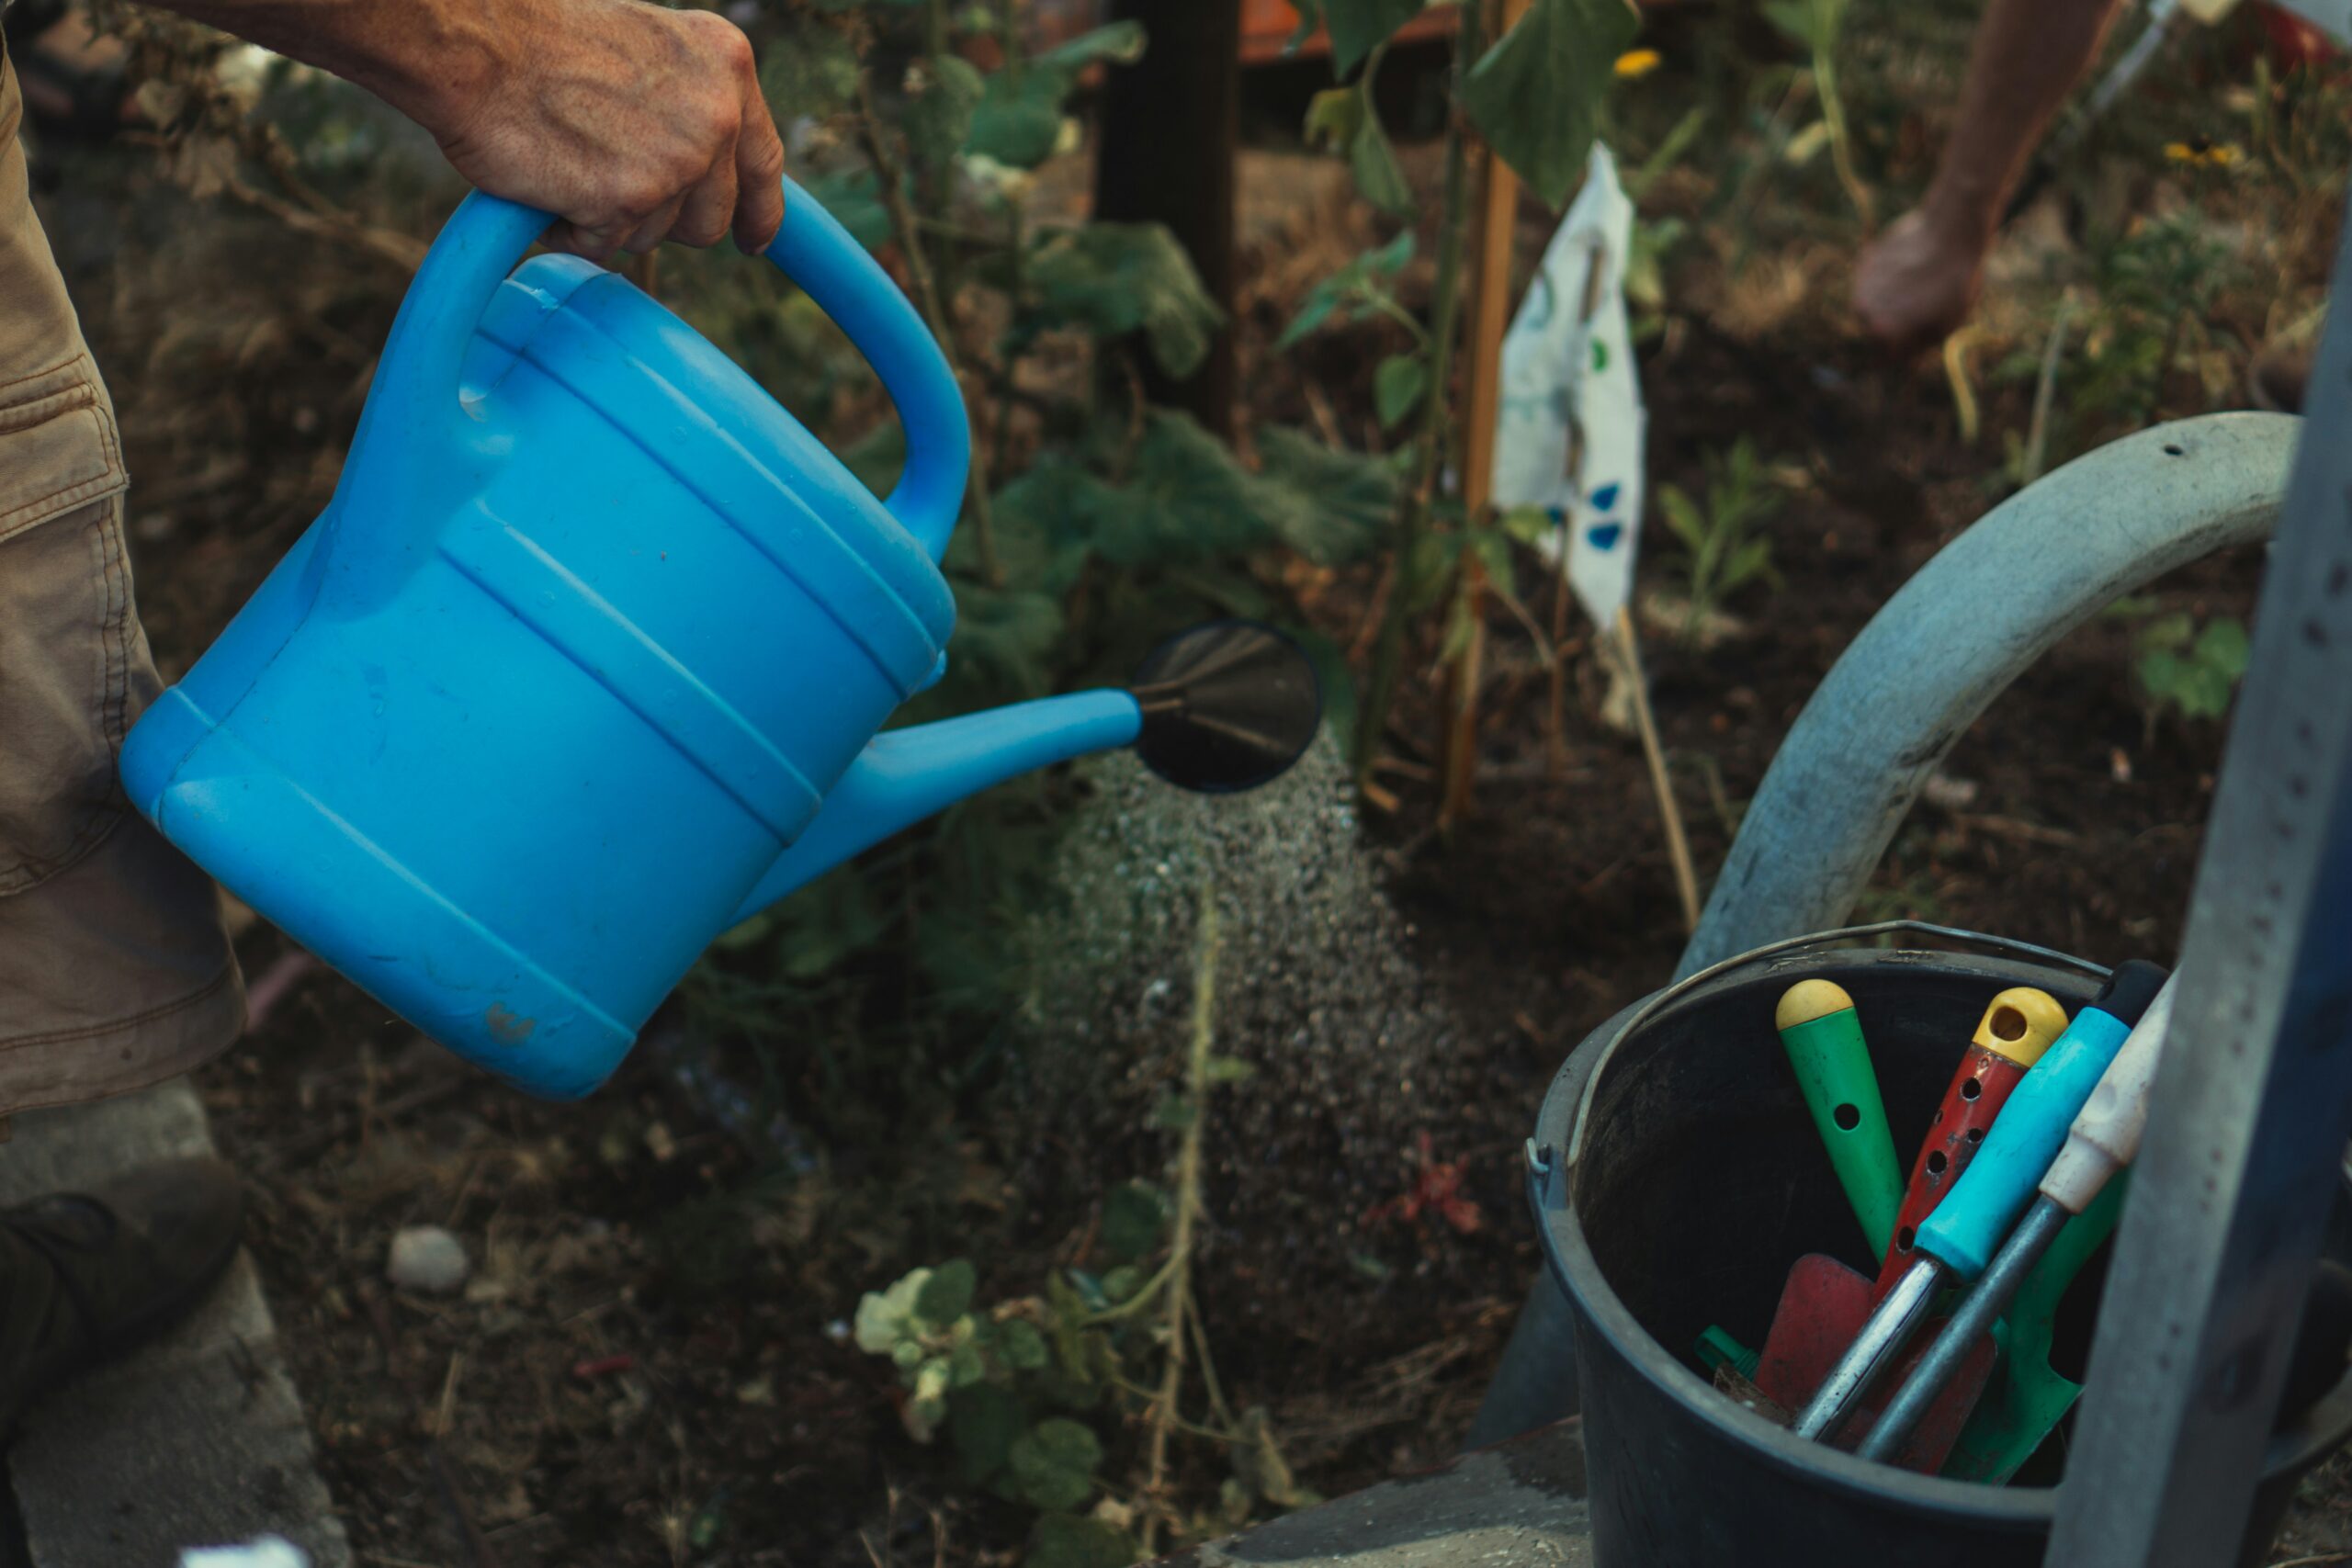 découvrez une large gamme d'outils de jardinage de haute qualité pour entretenir votre jardin avec efficacité et facilité.